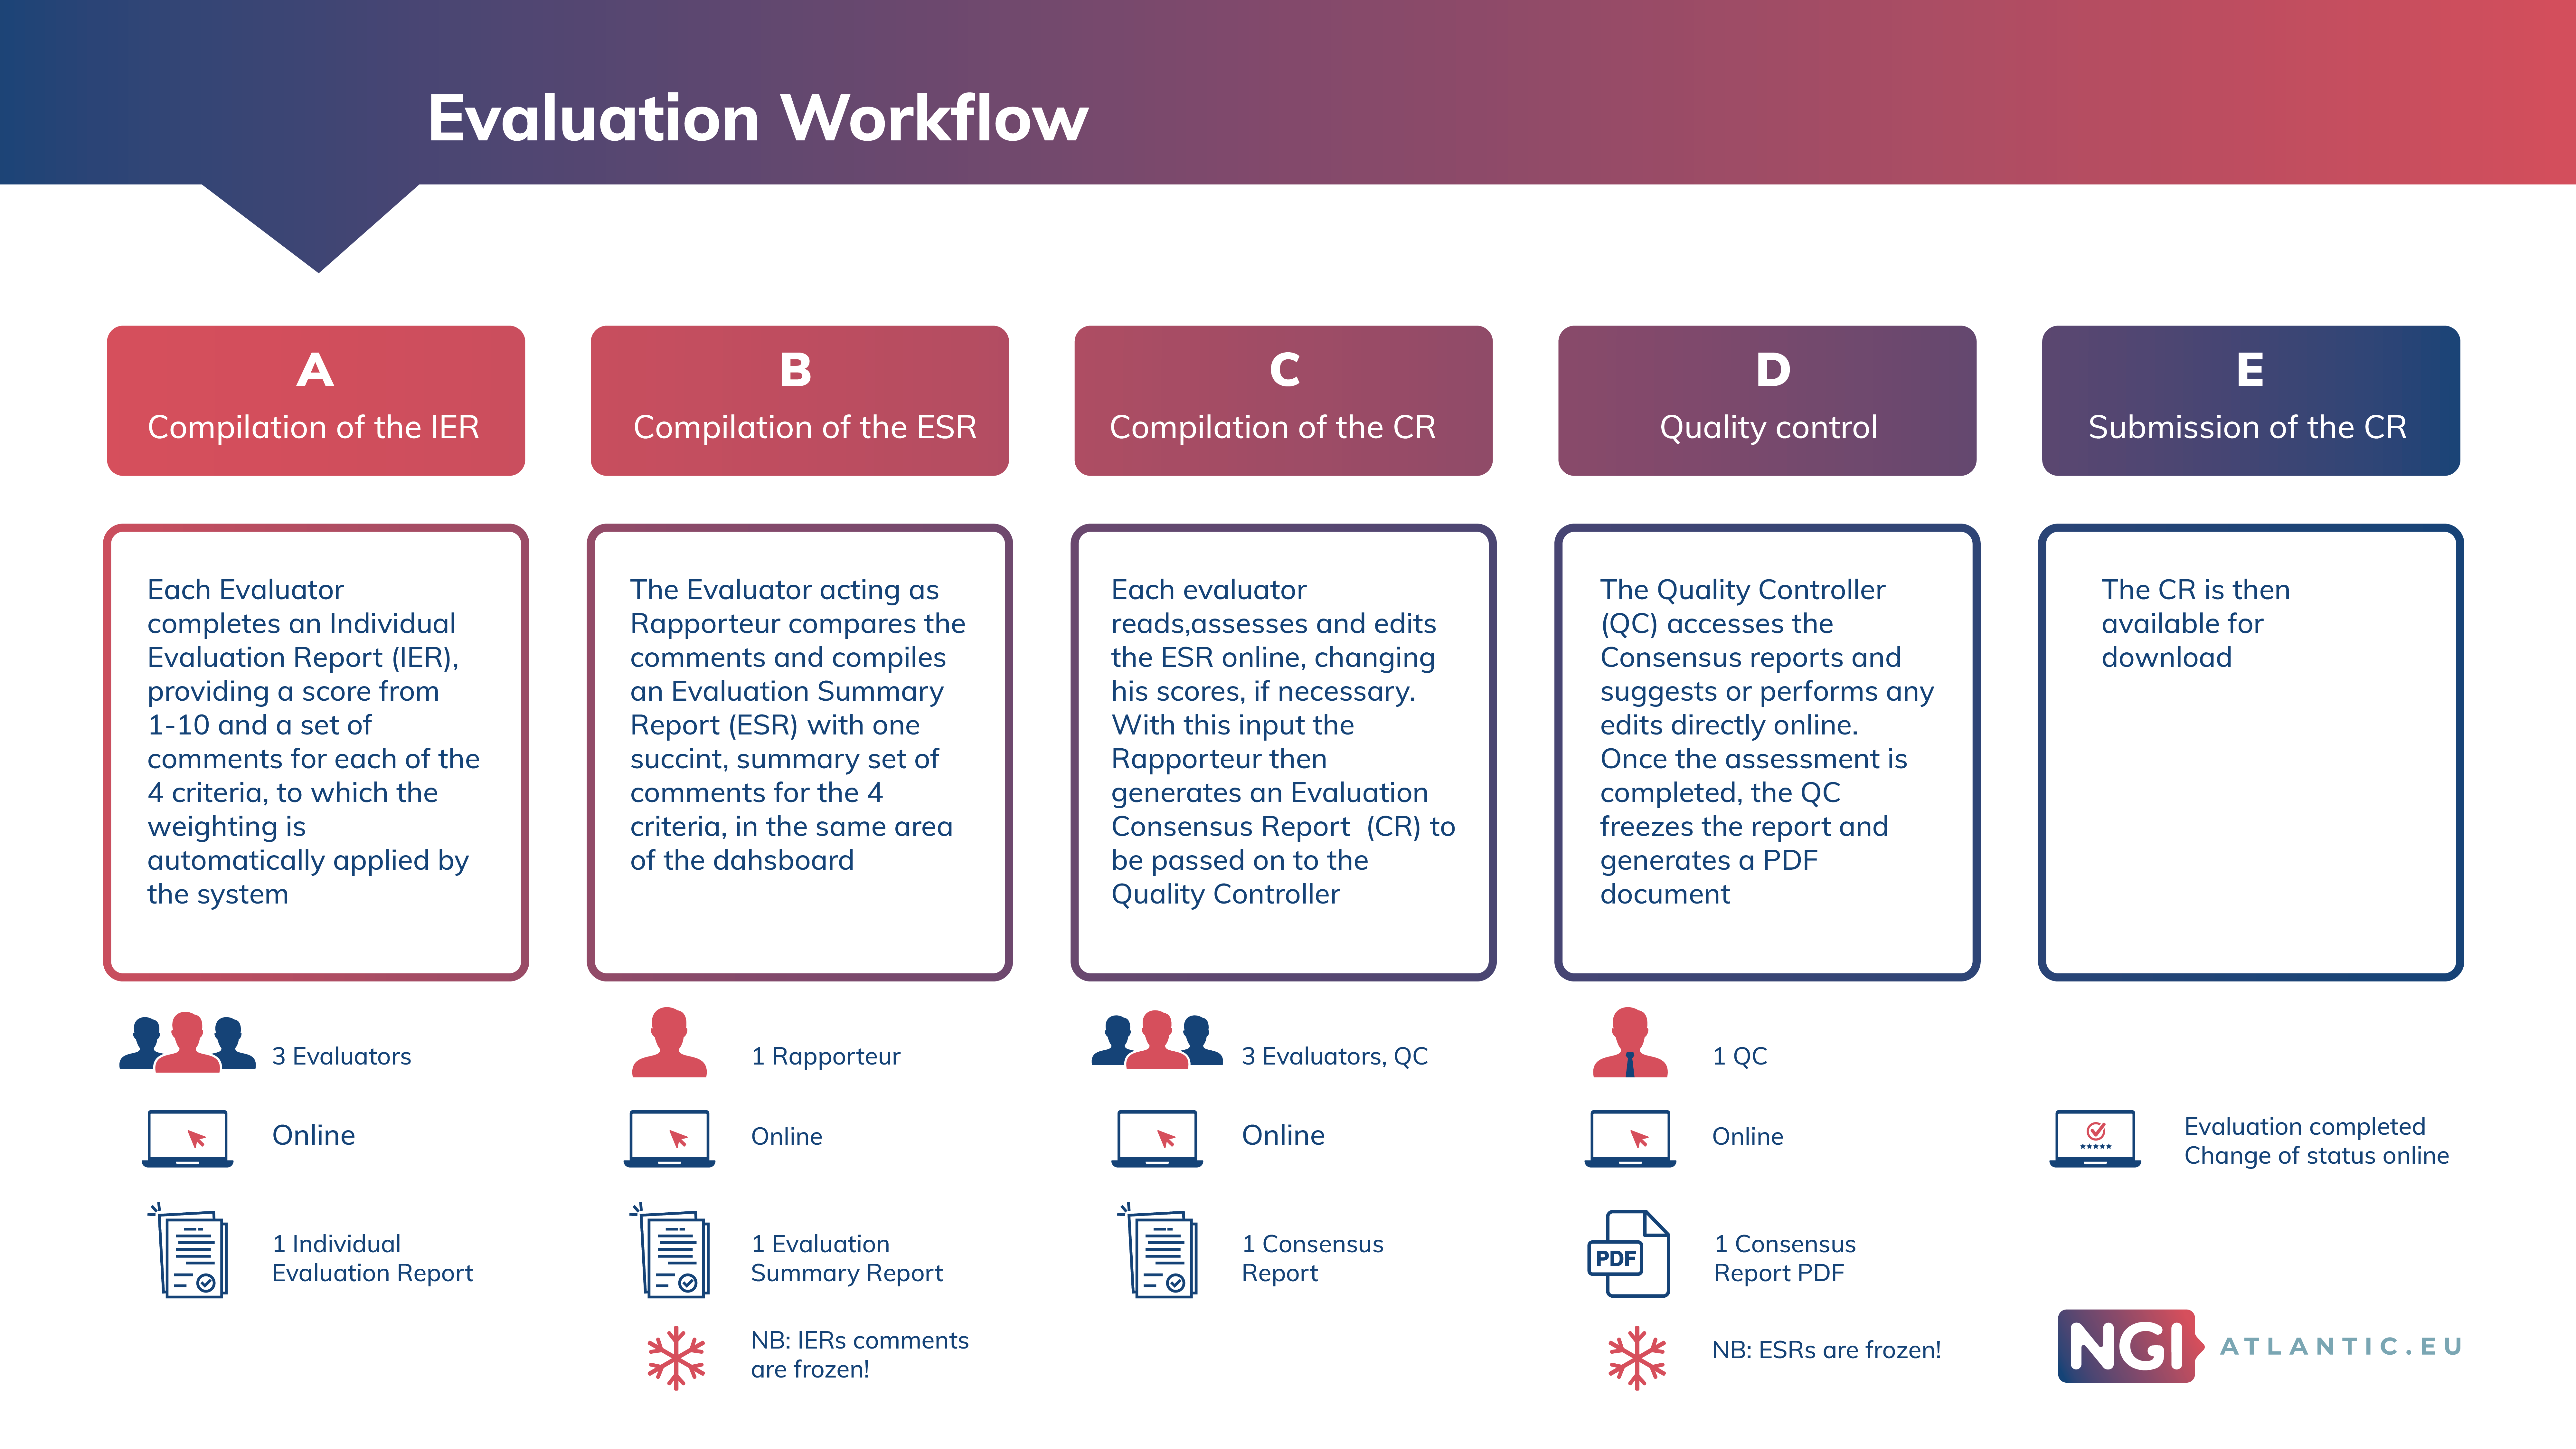 NGIatlantic.eu evaluation workflow